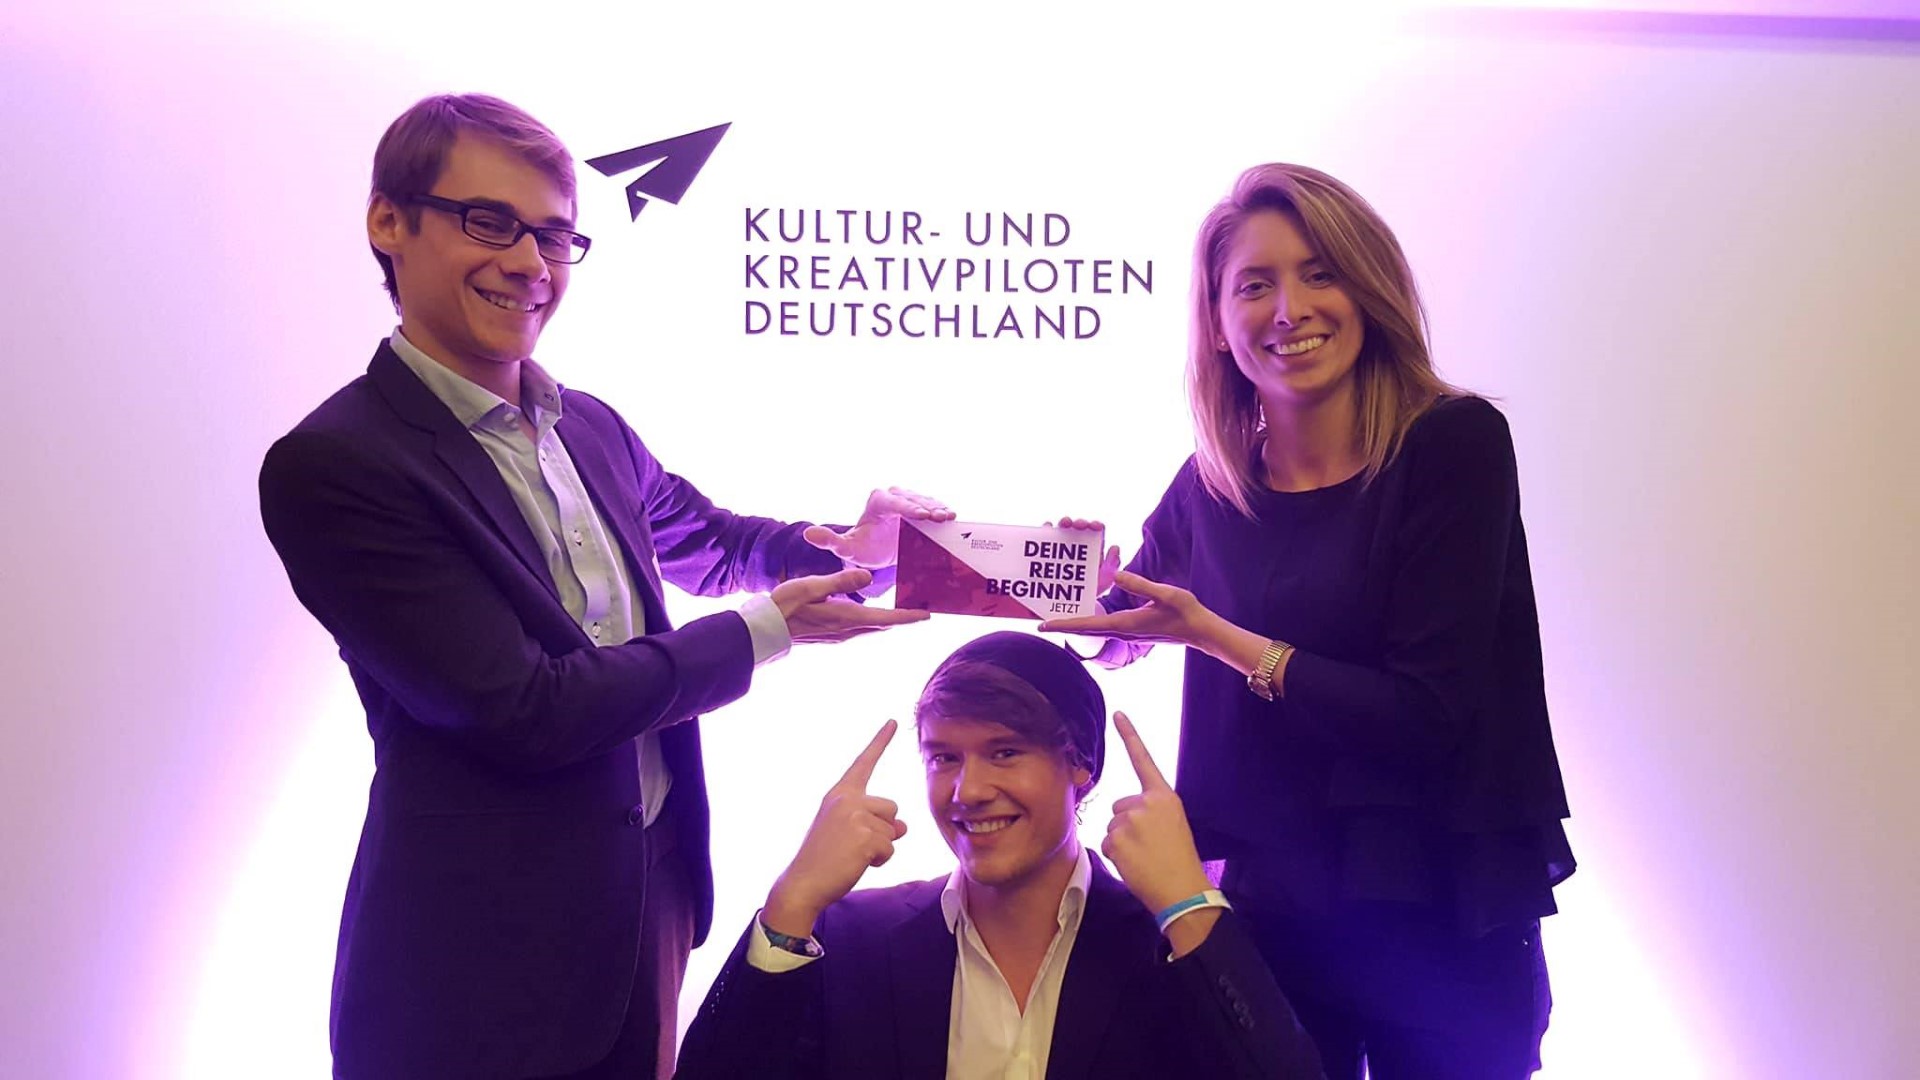 Team TimeLeapVR bei der Auszeichnung der Kultur-und Kreativpiloten in Berlin